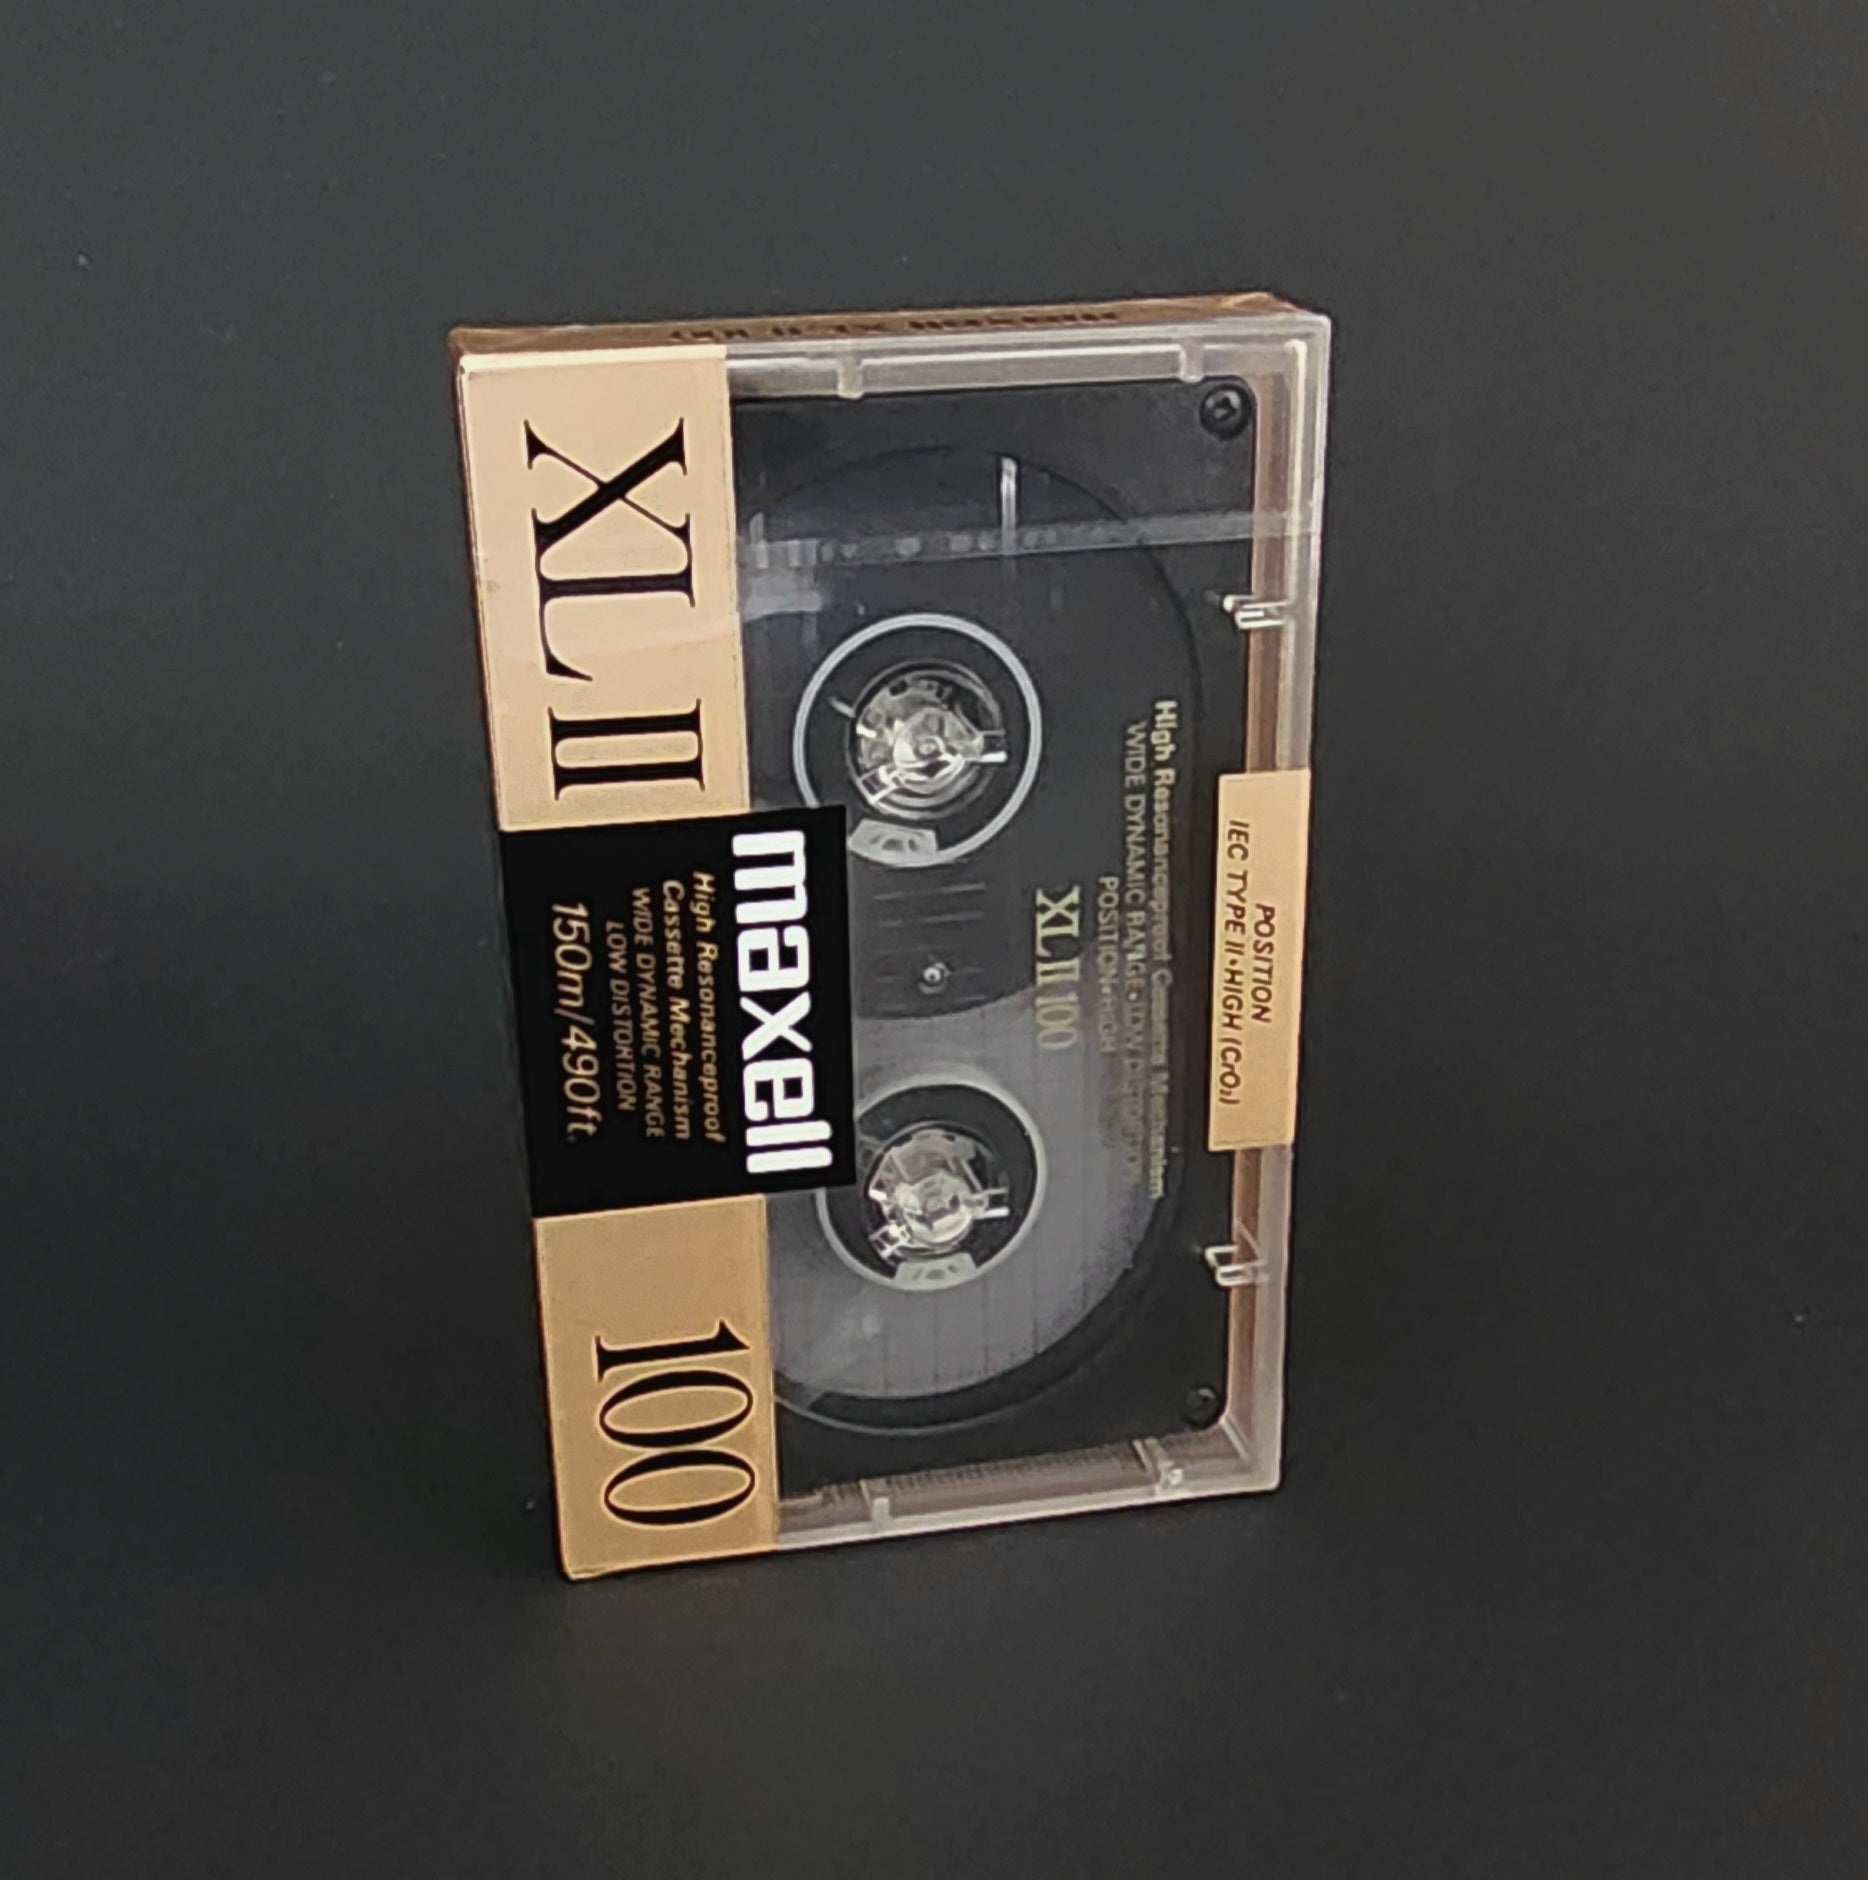 Maxell - XLII 100 blank cassette tape – High Fidelity Vinyl